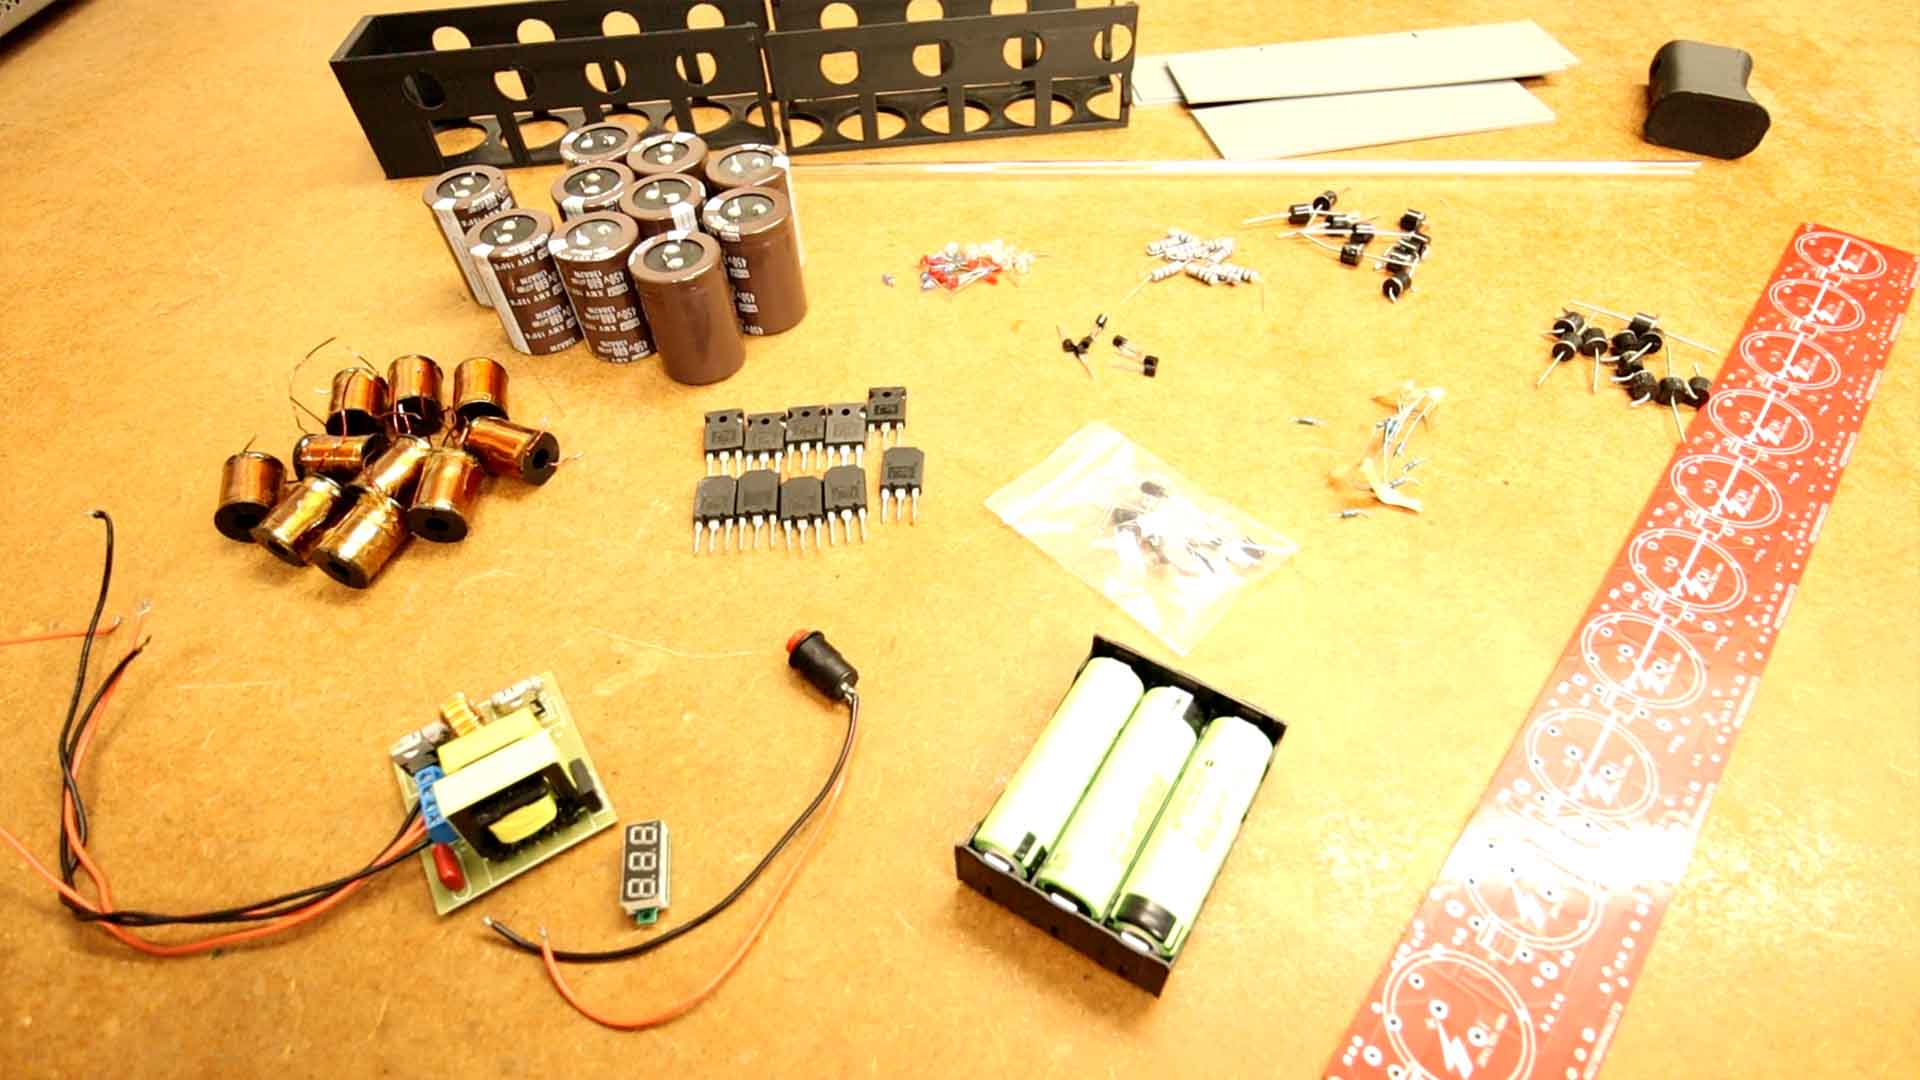 DIY coil gun components